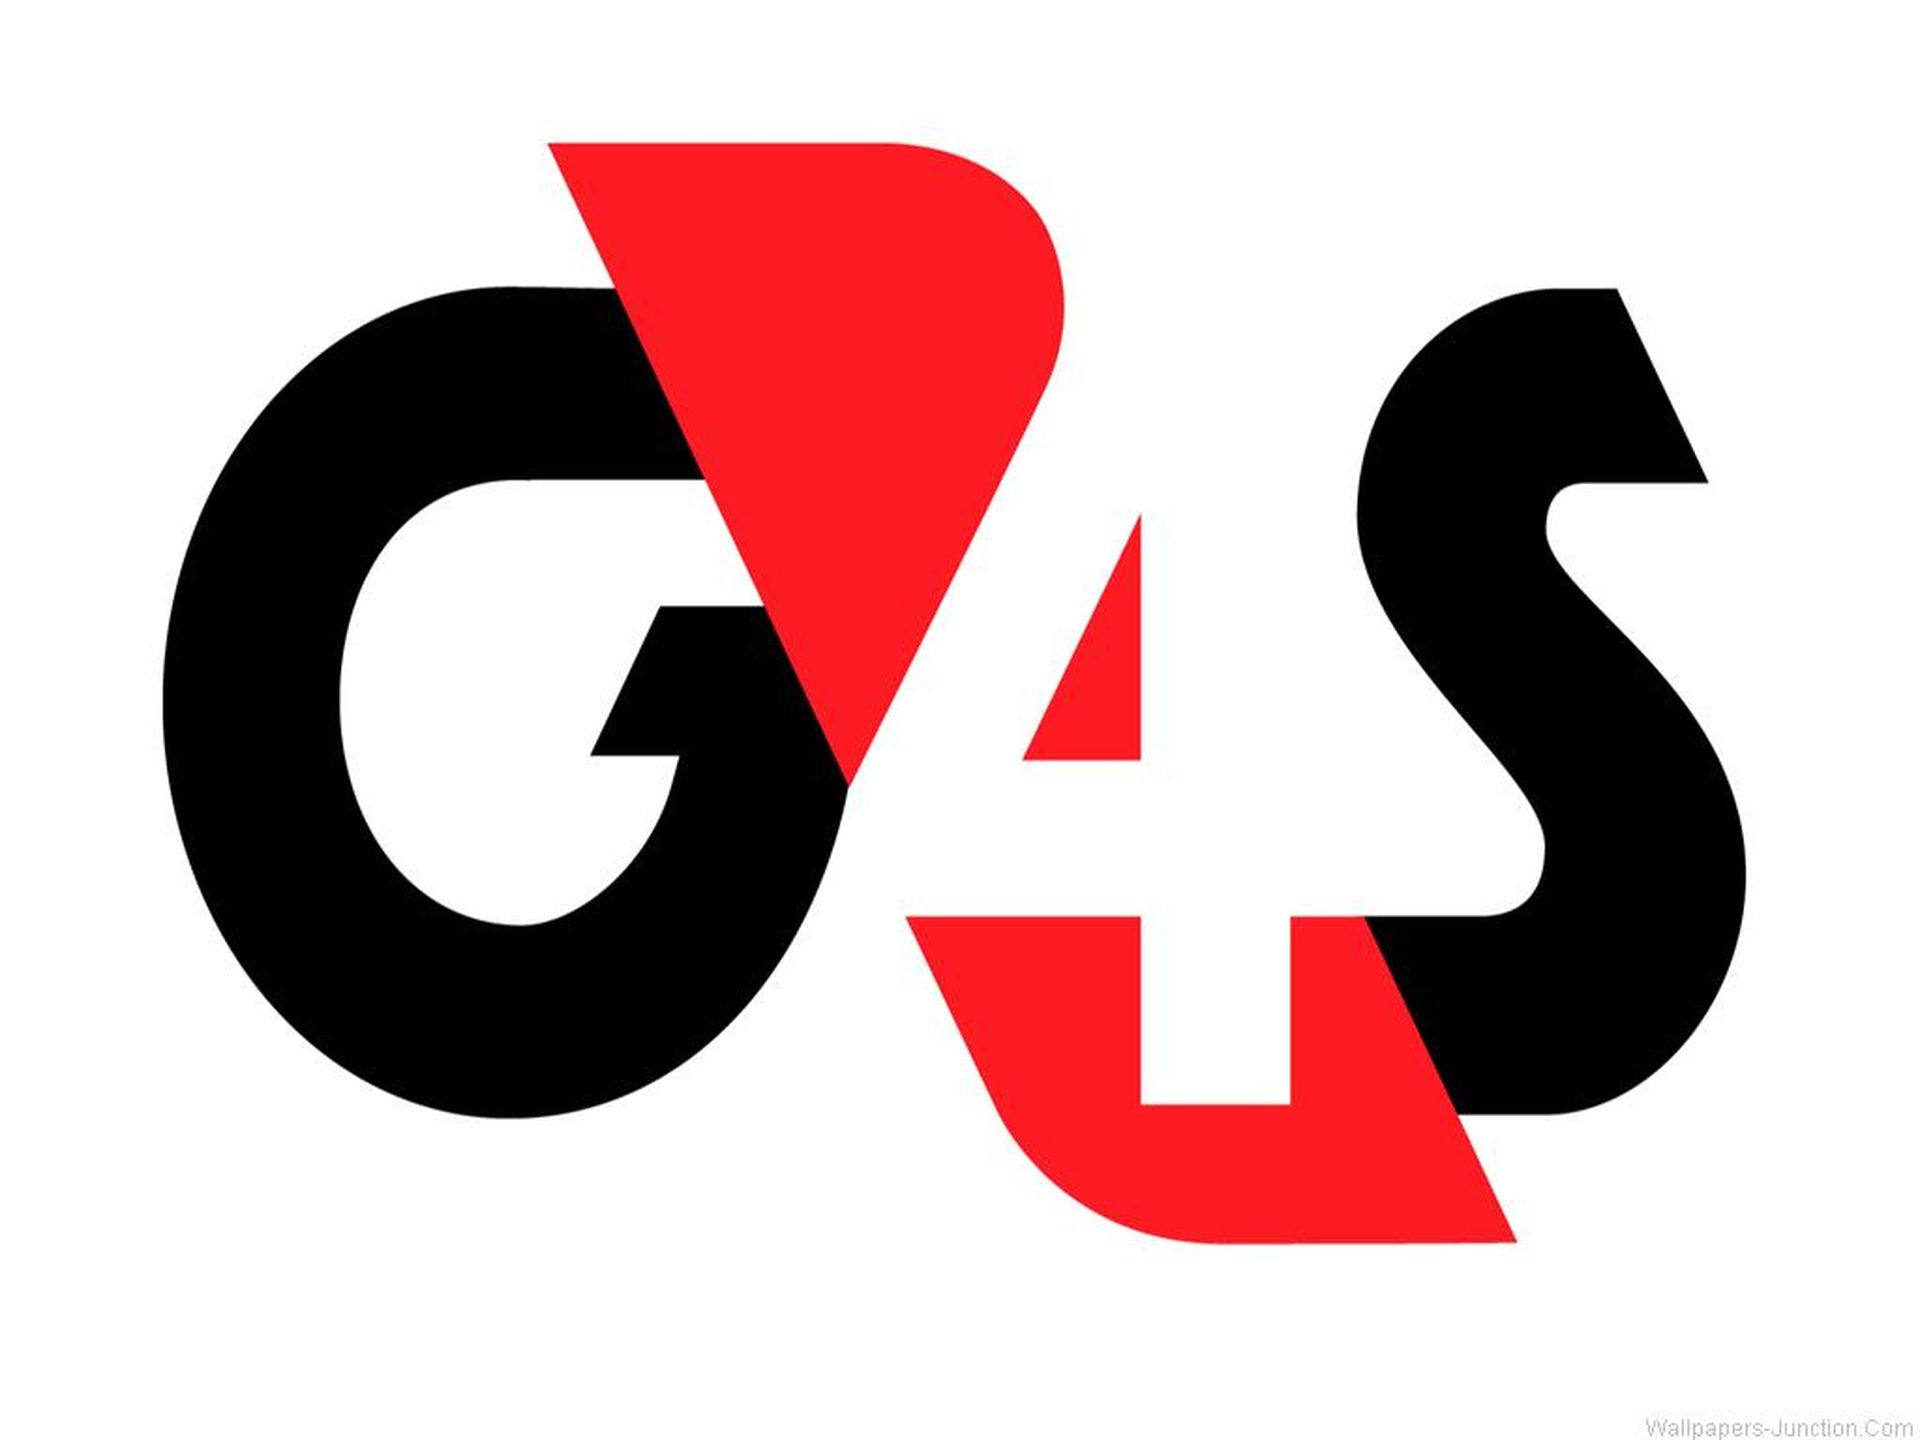 Uk g. G4s (Group 4 Securicor). №2 g4s. Group 4 Securicor. Bocanegra logo eps.